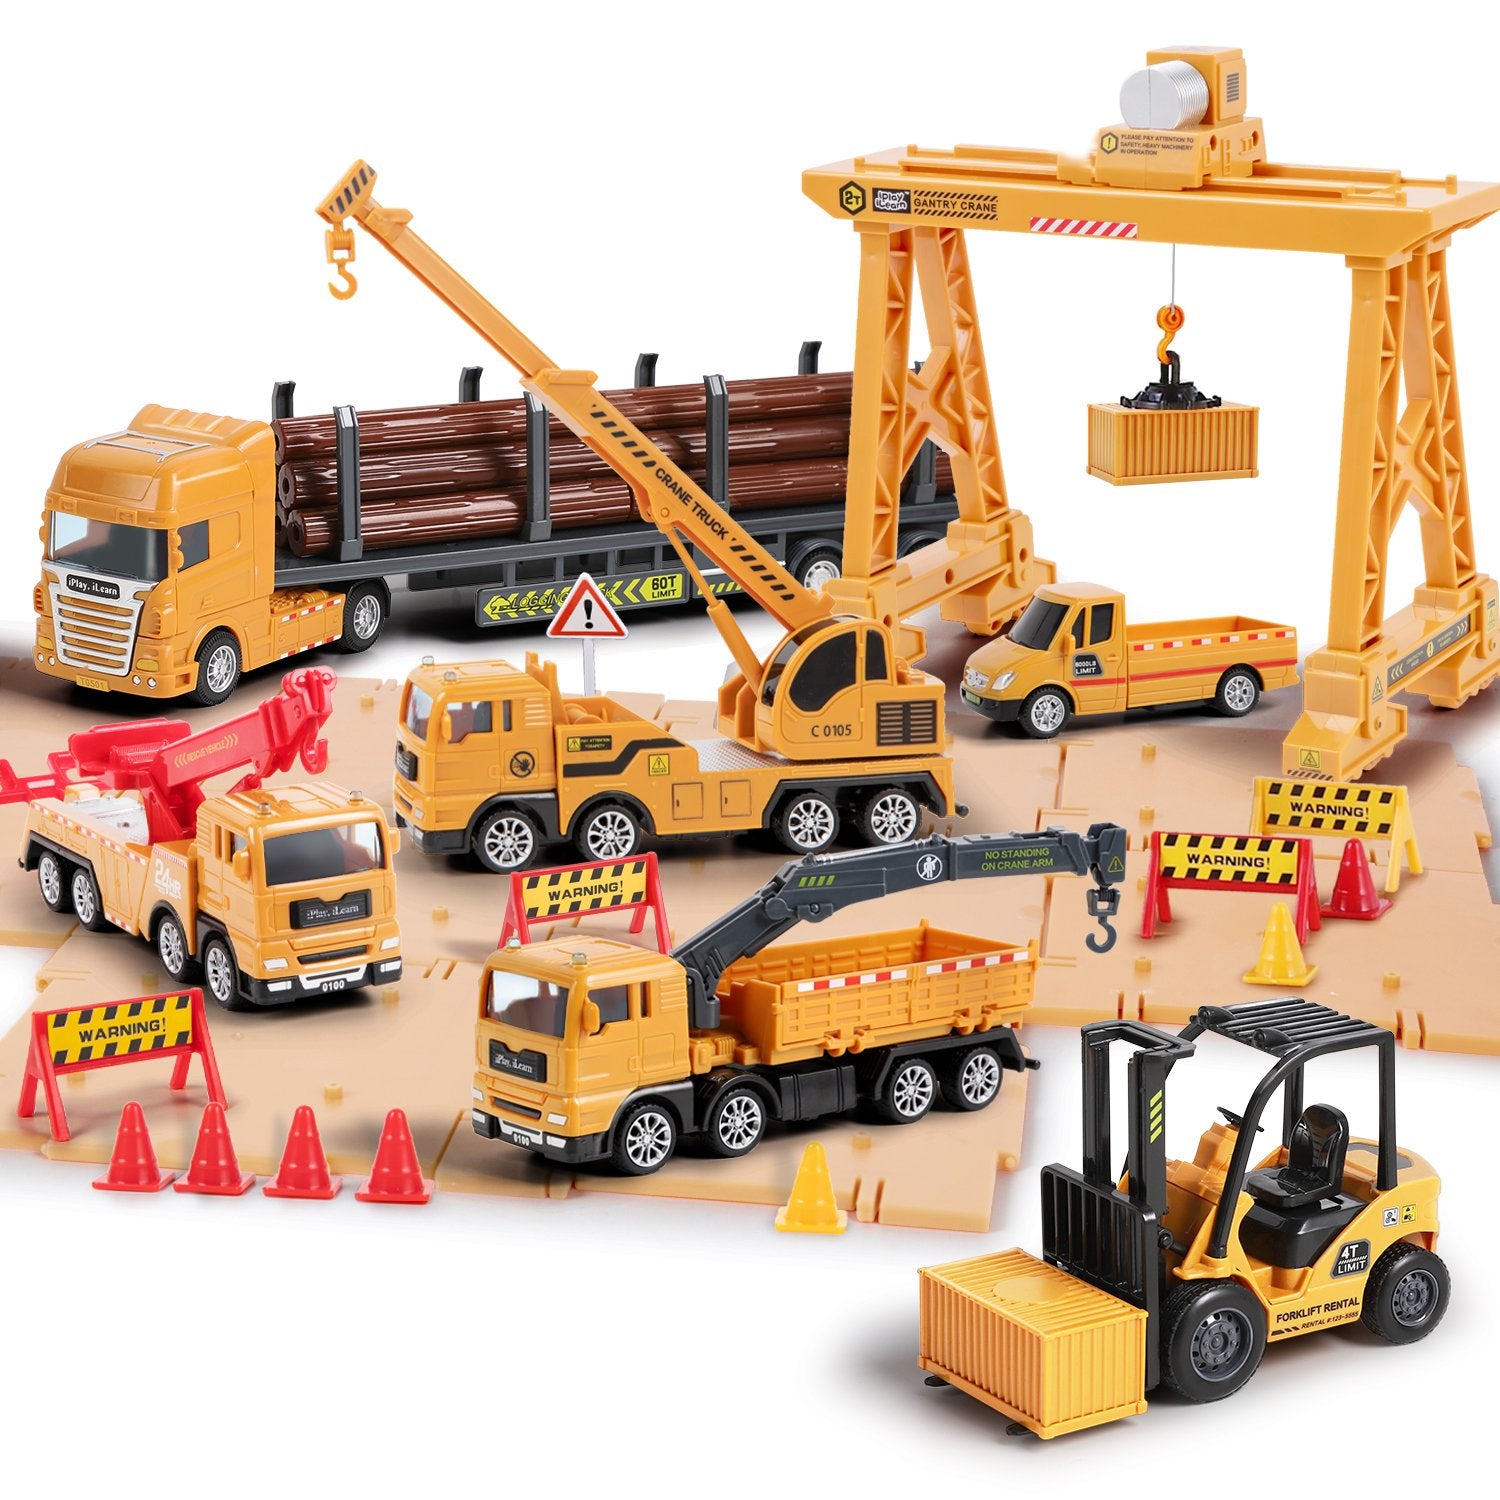 iPlay, iLearn Construction Cargo Transport Vehicle Crane Truck Toy Set –  iPlay iLearn Toys